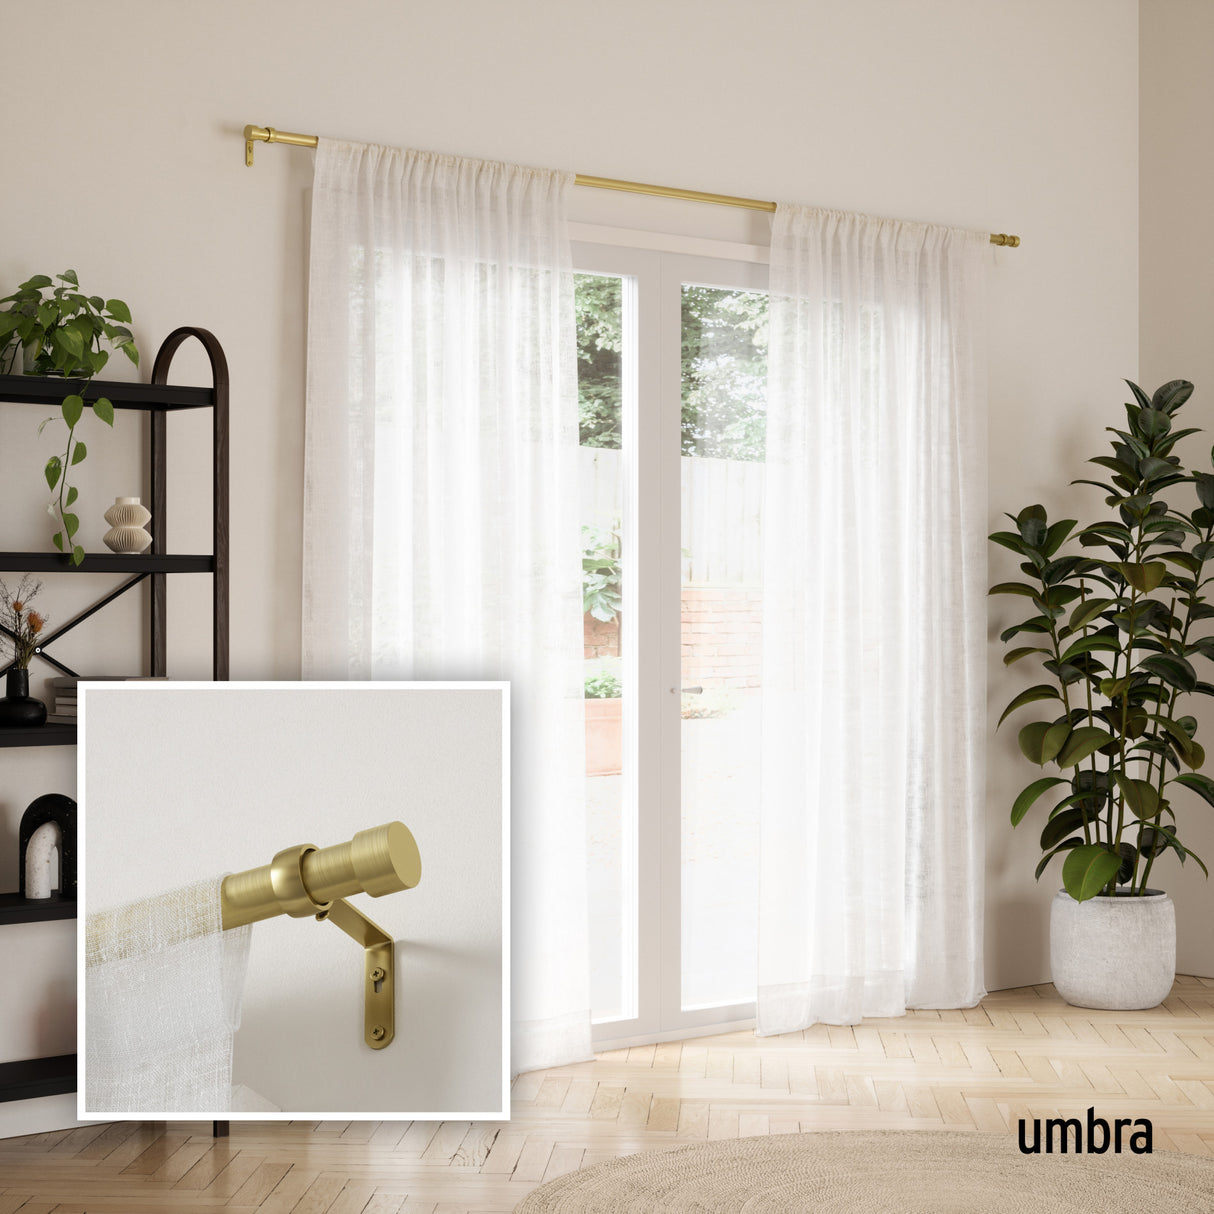 Single Curtain Rods | color: Gold | size: 66-120" (168-305 cm) | diameter: 1" (2.5 cm)